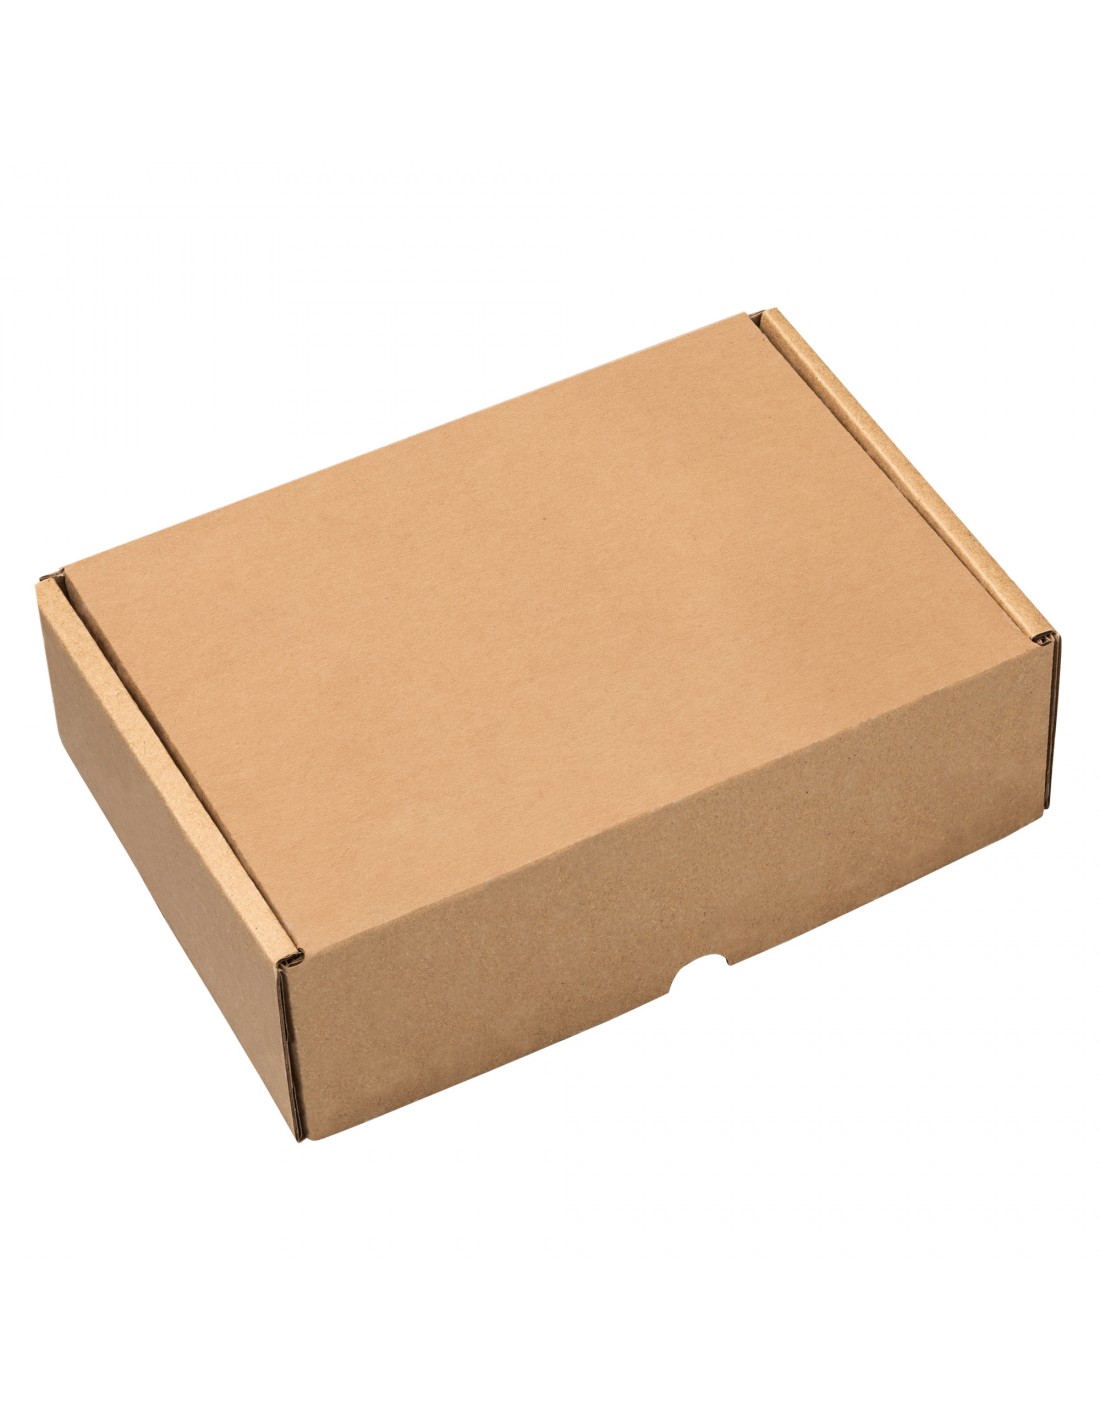 Pack 50 cajas para envíos 335x335x110mm Caja cartón Kraft Ideal para tiendas online Caja automontable Ultraresistentes Montaje muy fácil y sencillo.Apta para envíos postales 